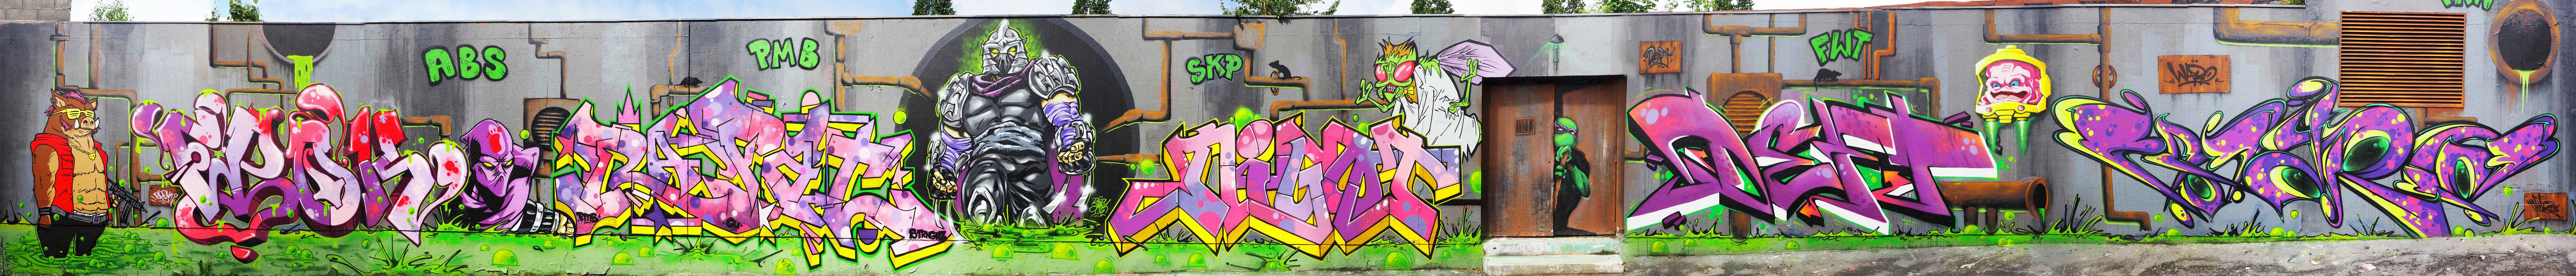 fresque-tortues-ninja-graffiti-street-art